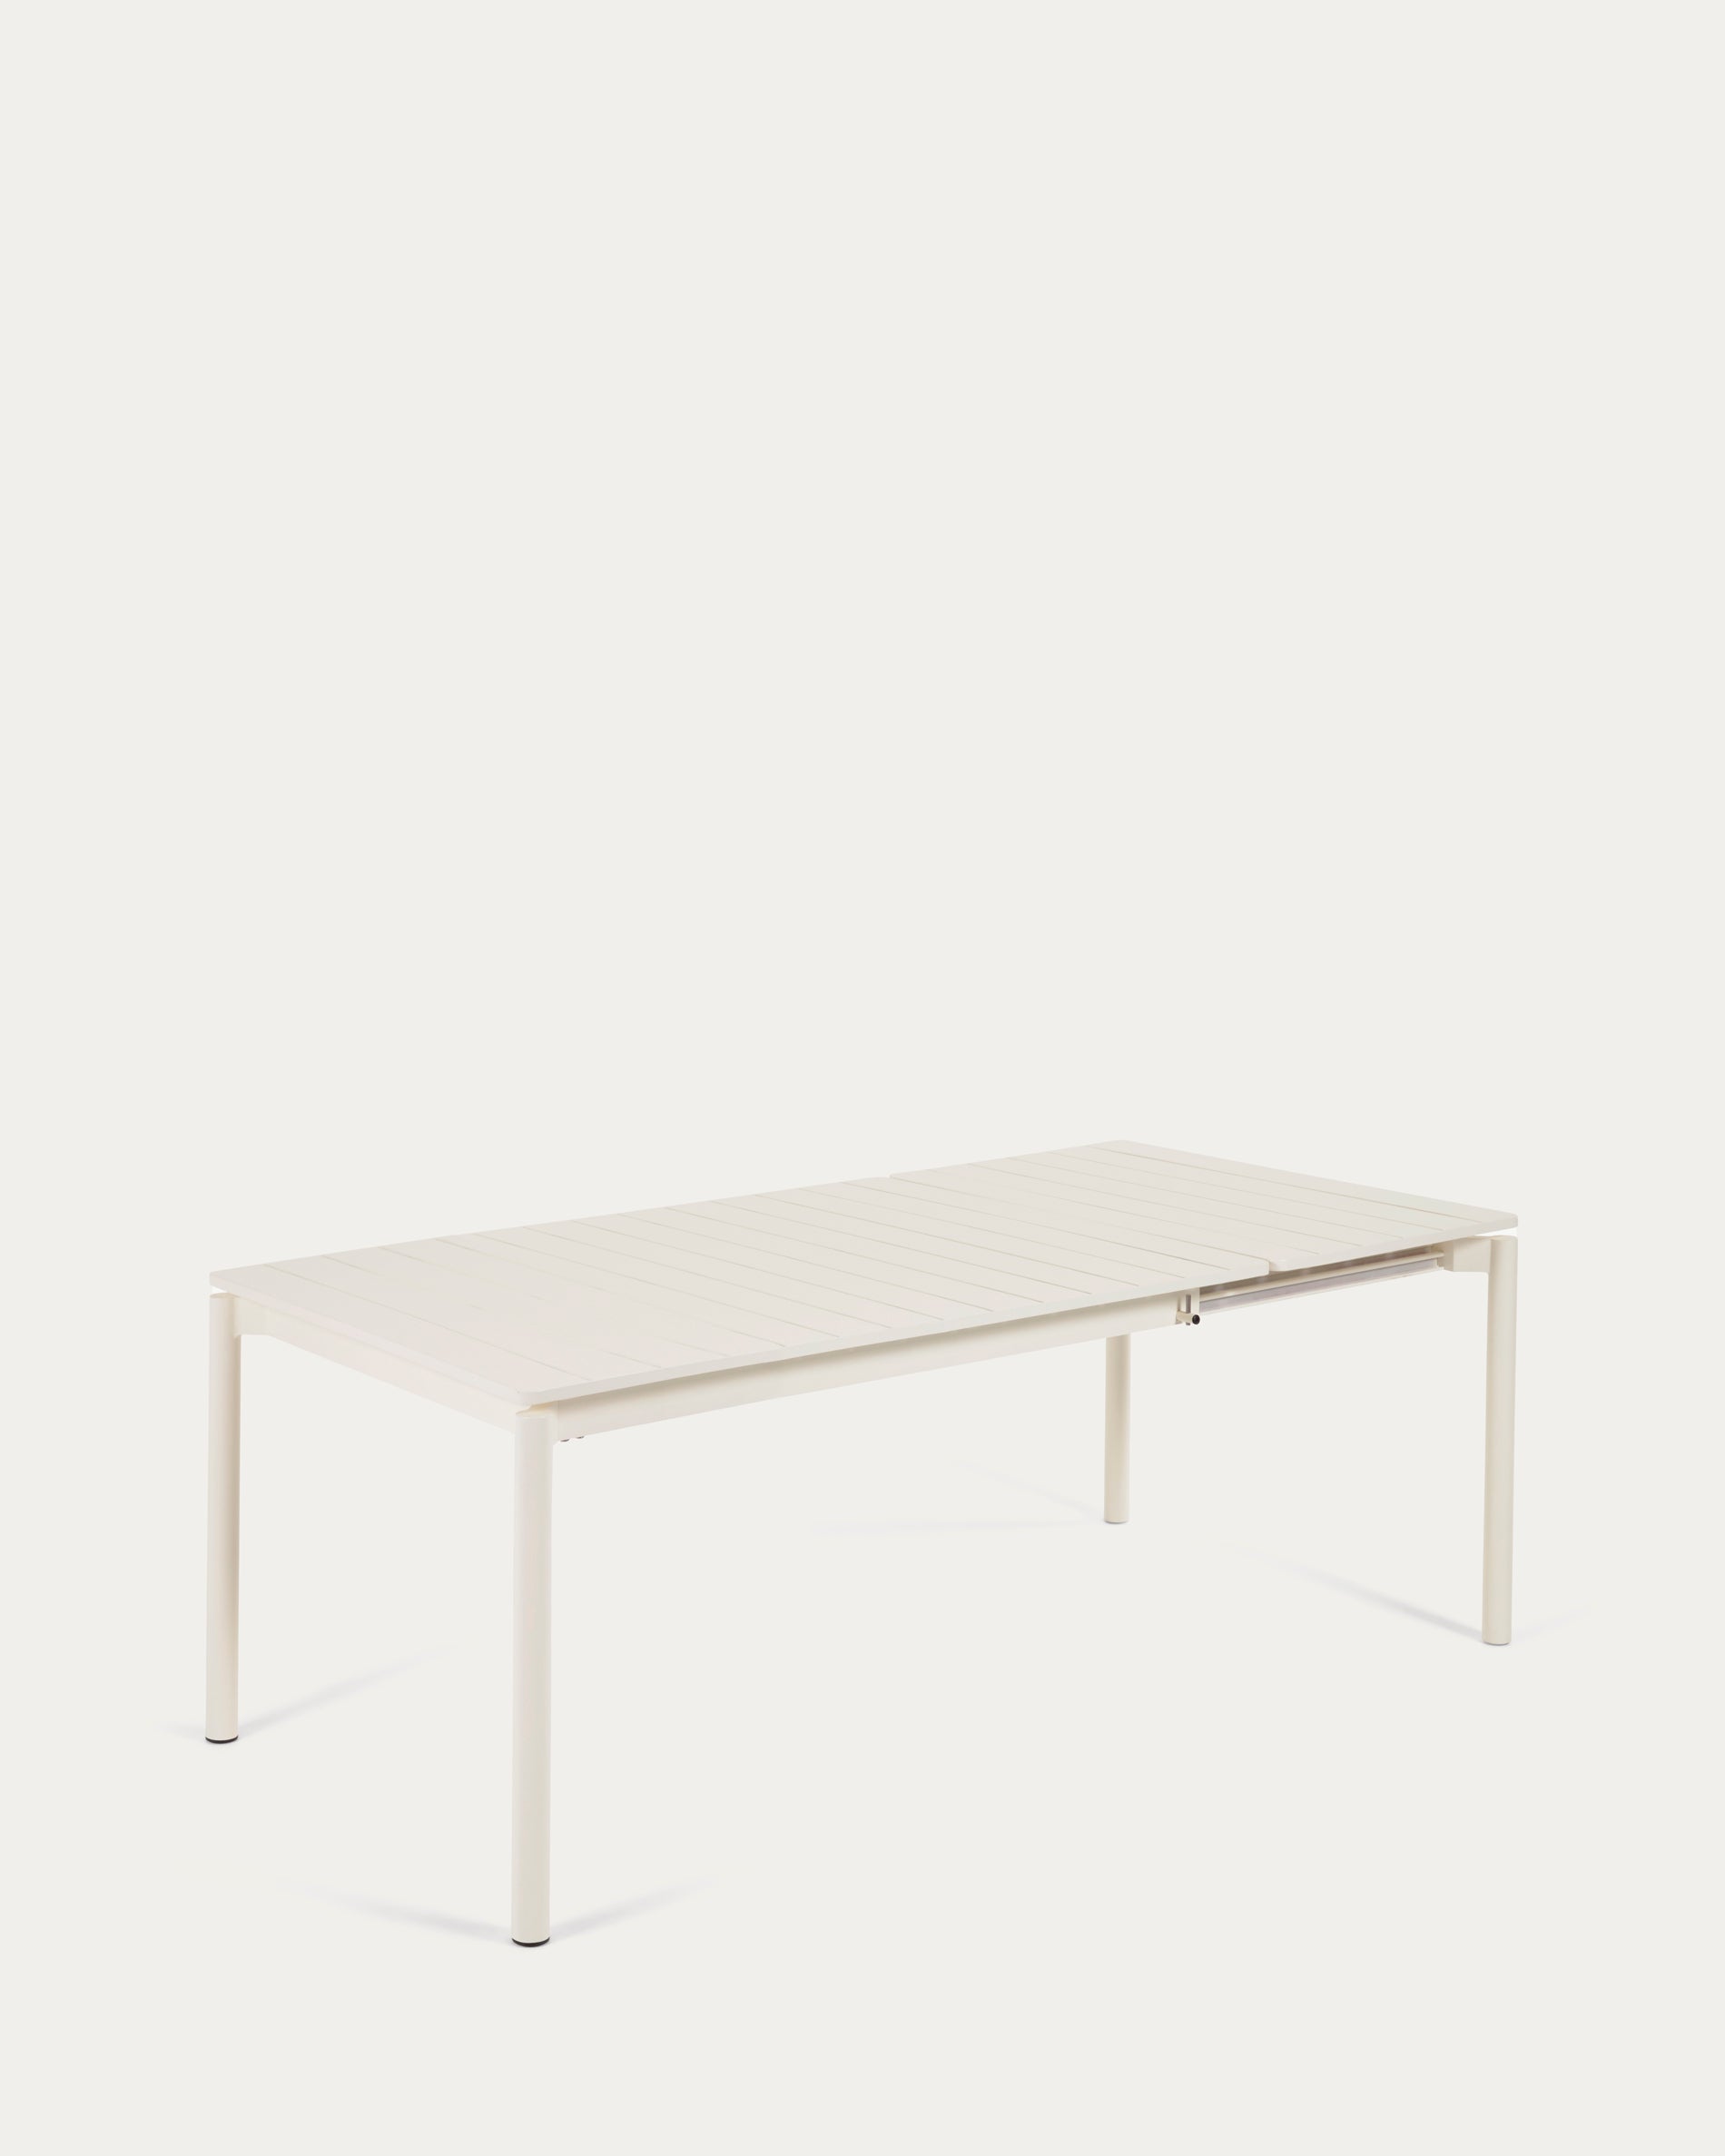 Zaltana kihúzható kültéri asztal alumíniumból nyers befejezéssel, 140 (200) x 100 cm